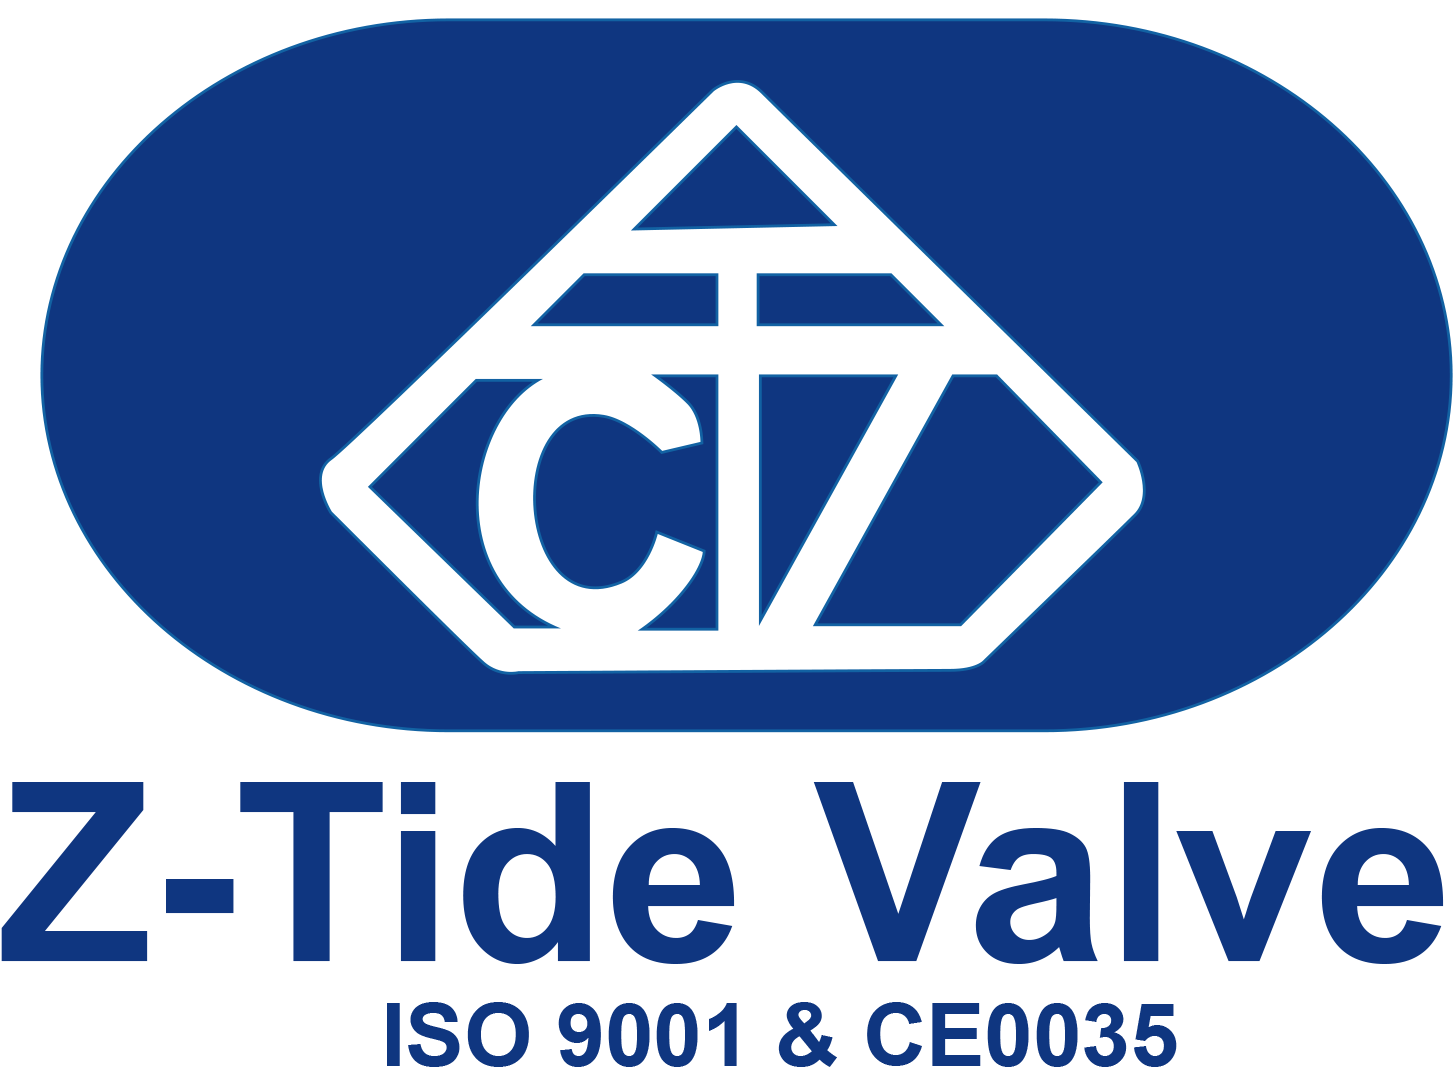 Z-tide Valve, Pressure Control Valve Expert - Z Tide Valves (1452x1128), Png Download